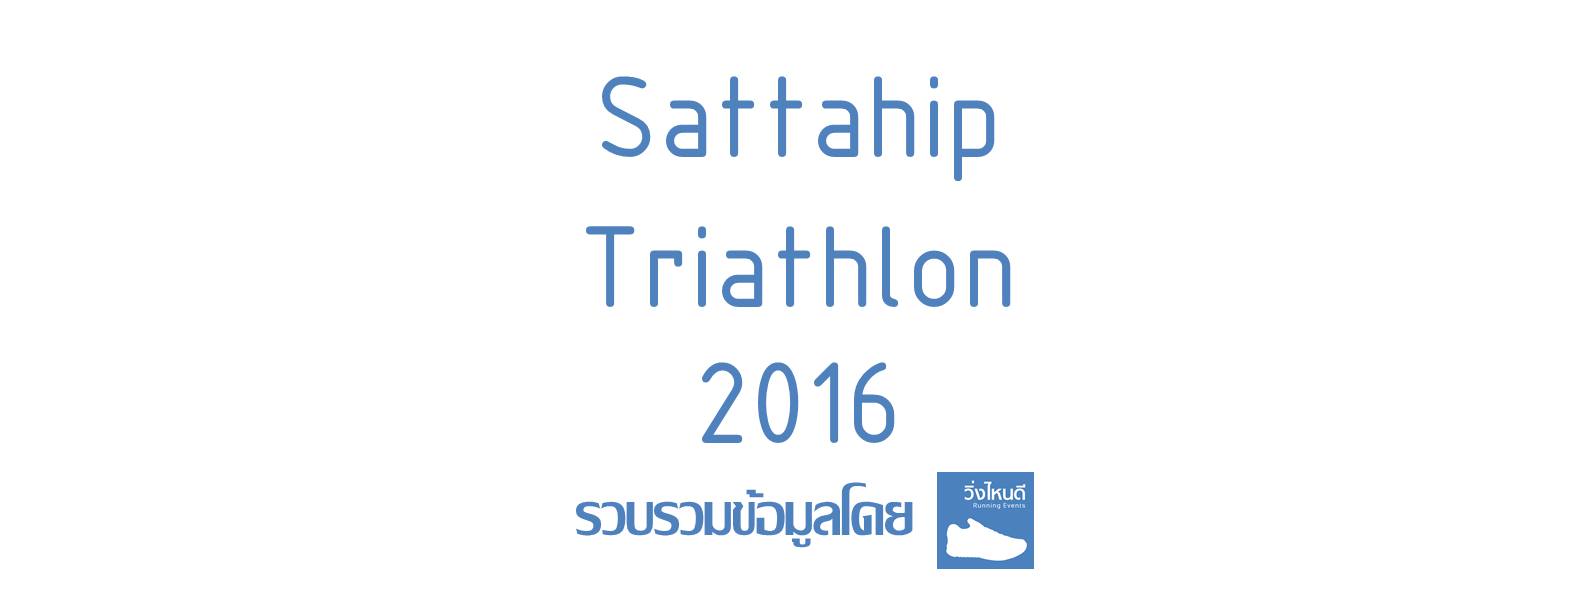 Sattahip Triathlon 2016